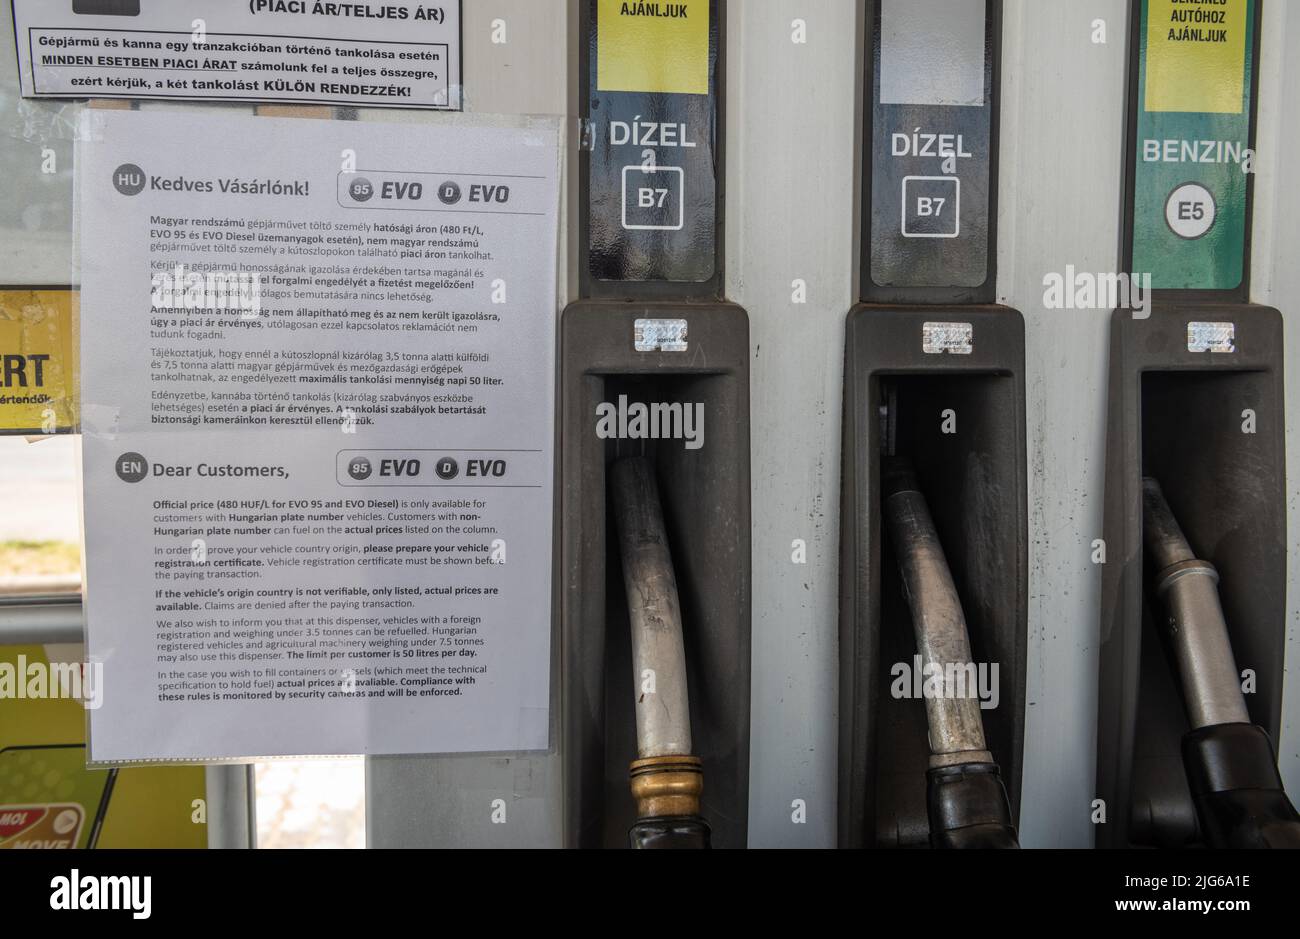 Szeged, Hungría – 7 de julio de 2022. Notificación sobre la bomba de gasolina de la estación de gasolina MOL en Szeged, Hungría, diciendo que el gas a precio oficial de 480 HUF es Foto de stock